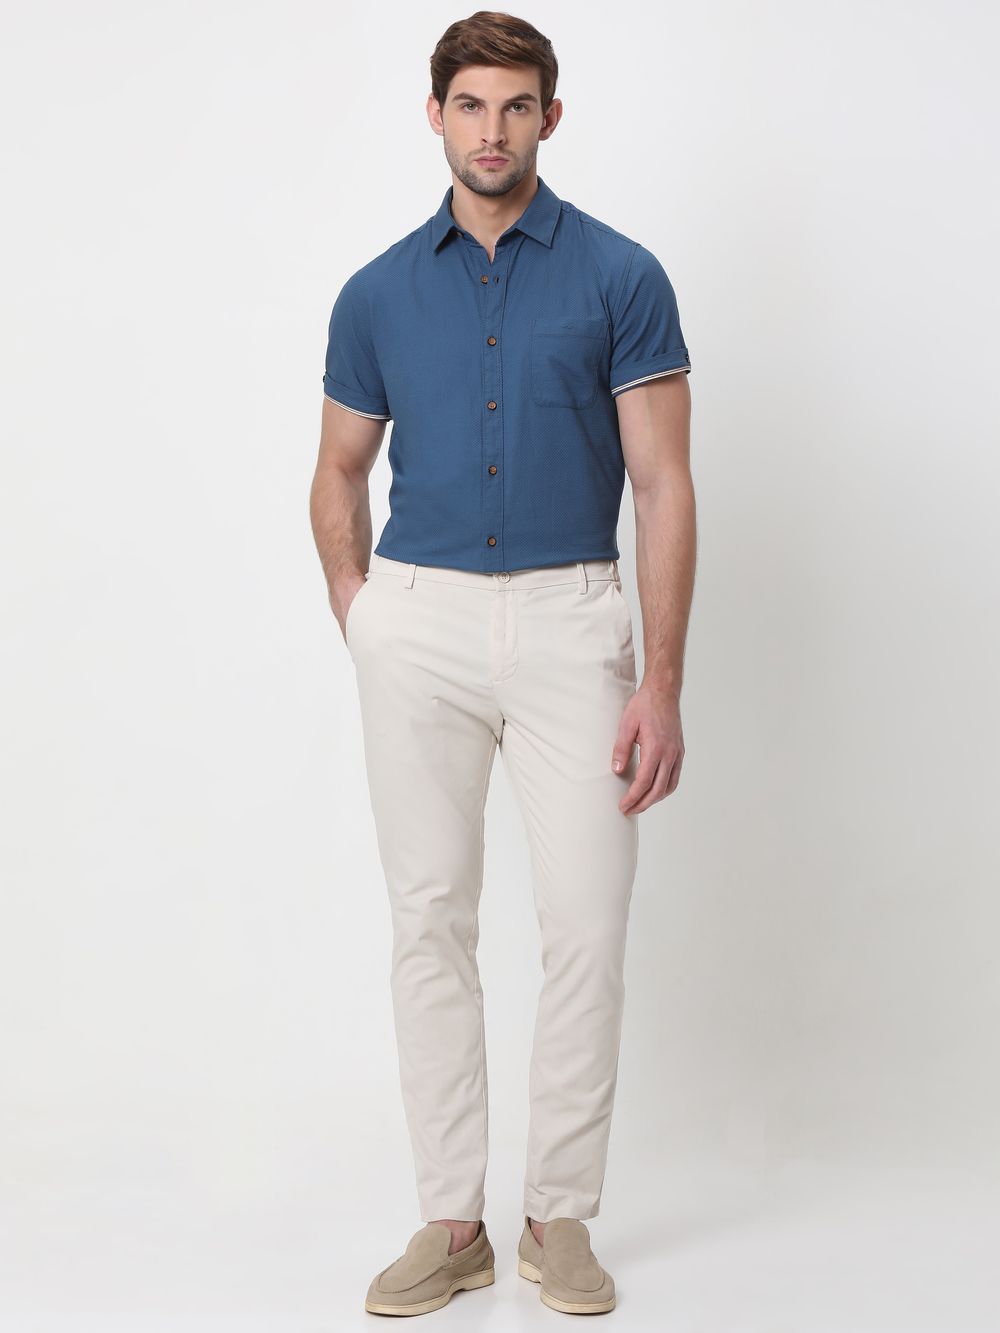 Blue Cotton Plain Shirt